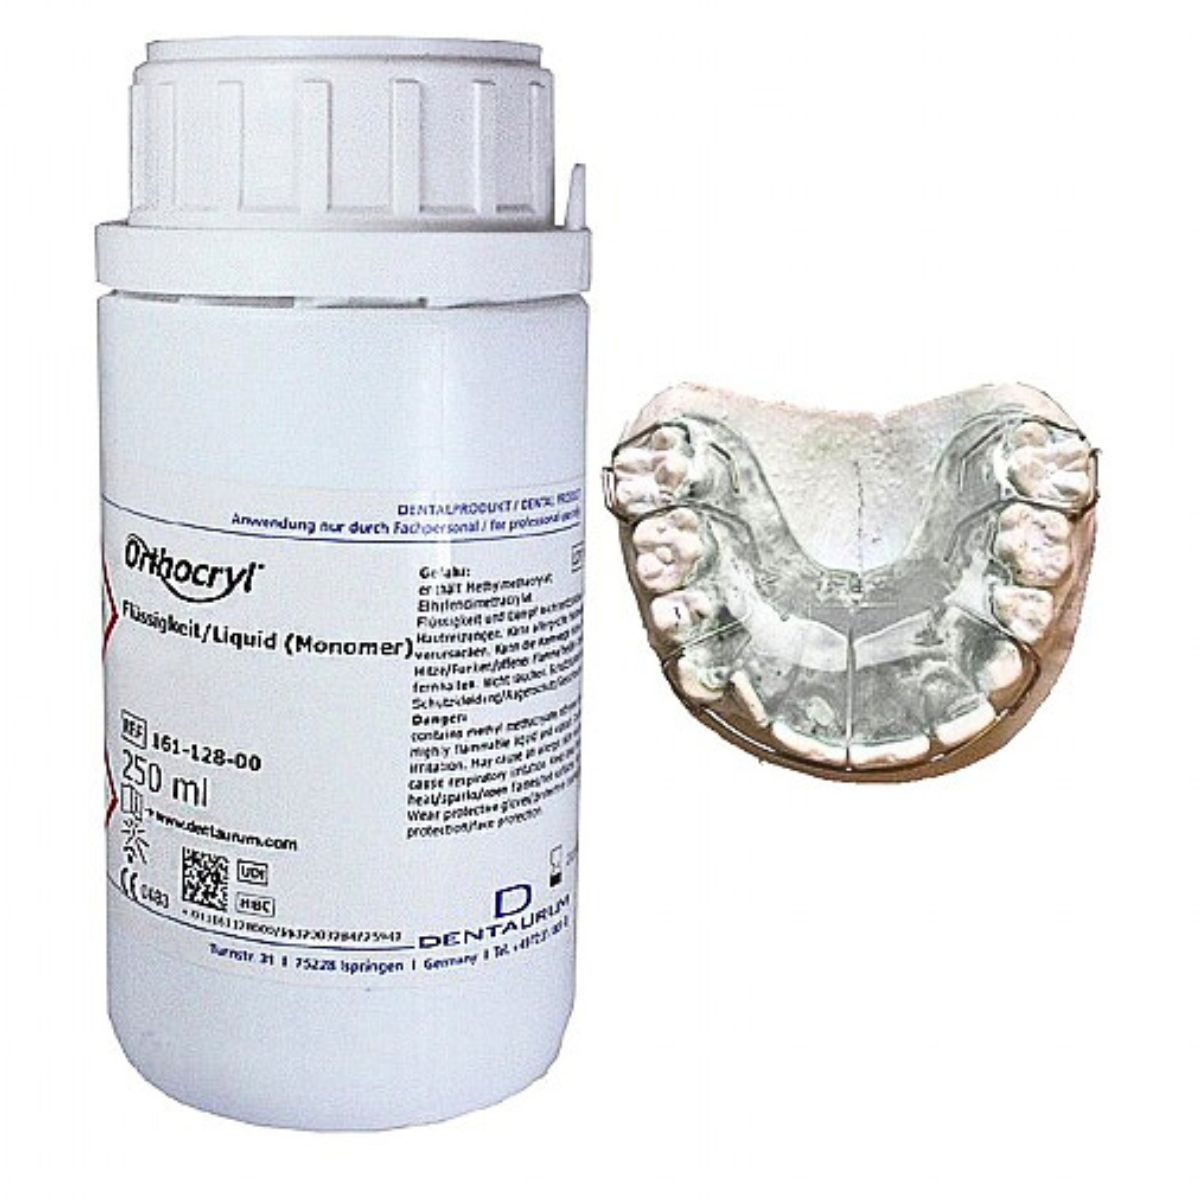 Dentaurum Orthocryl Clear Acrylic Liquid 250ml